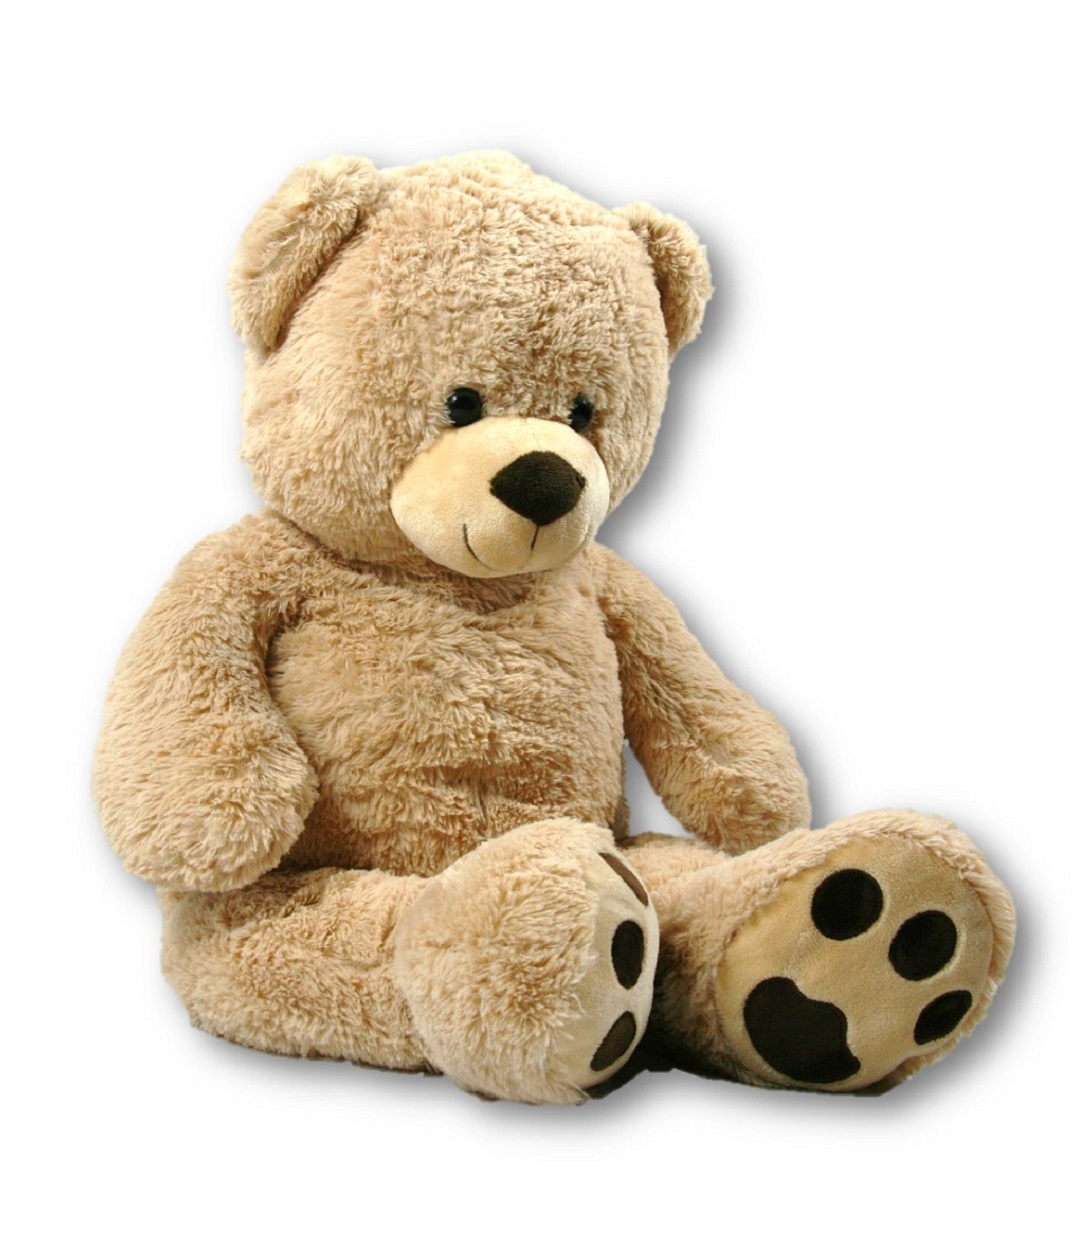 Riesen Teddybär Kuschelbär XXL 100 cm groß weiß mit Herz Plüschbär Kuscheltier 